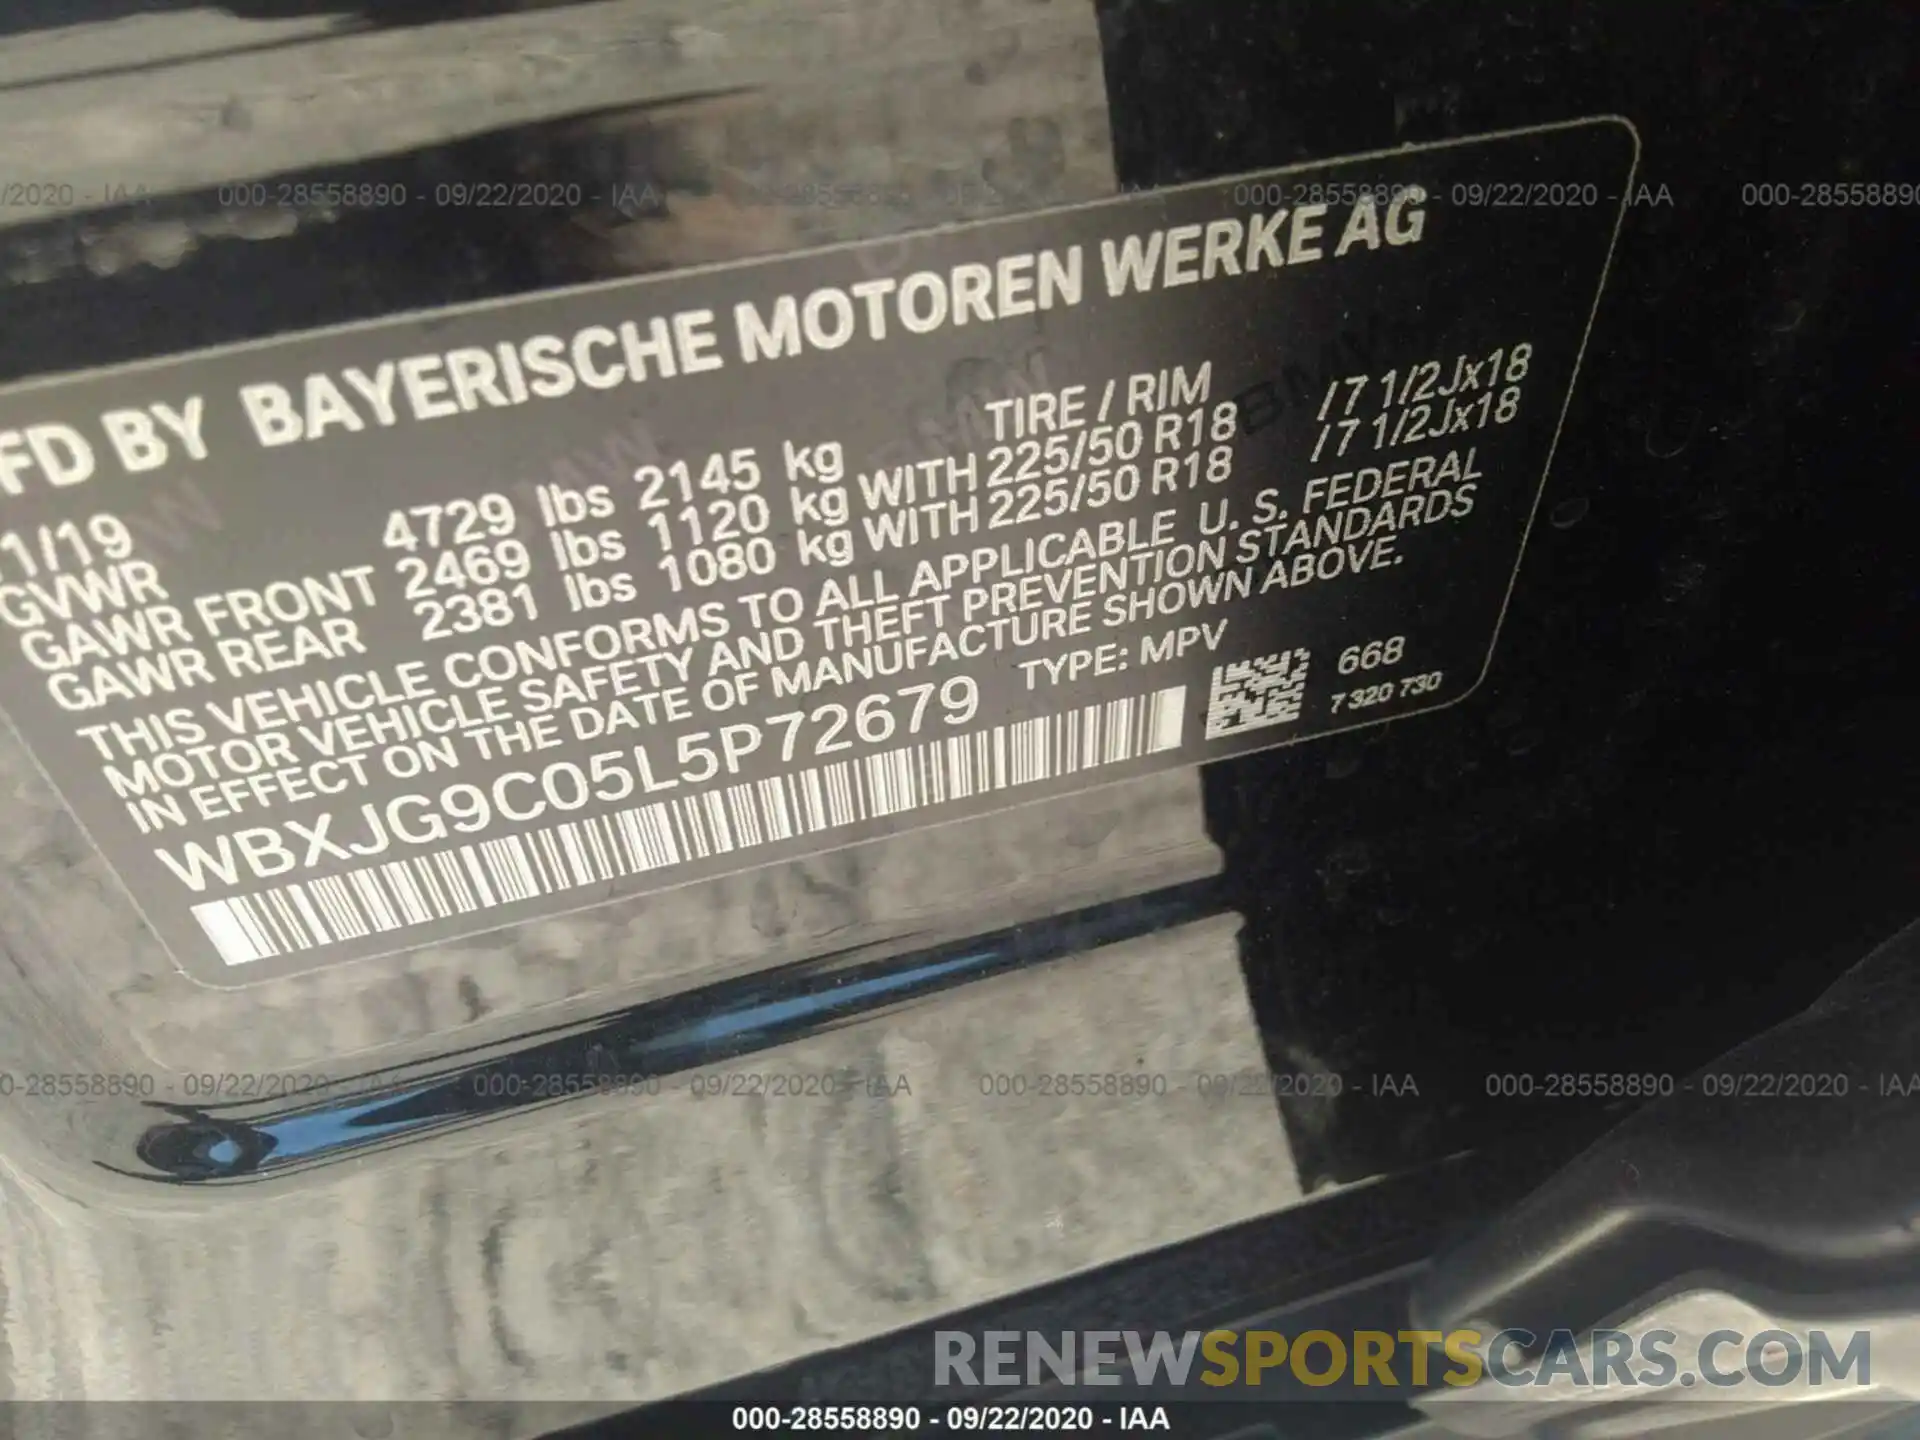 9 Photograph of a damaged car WBXJG9C05L5P72679 BMW X1 2020